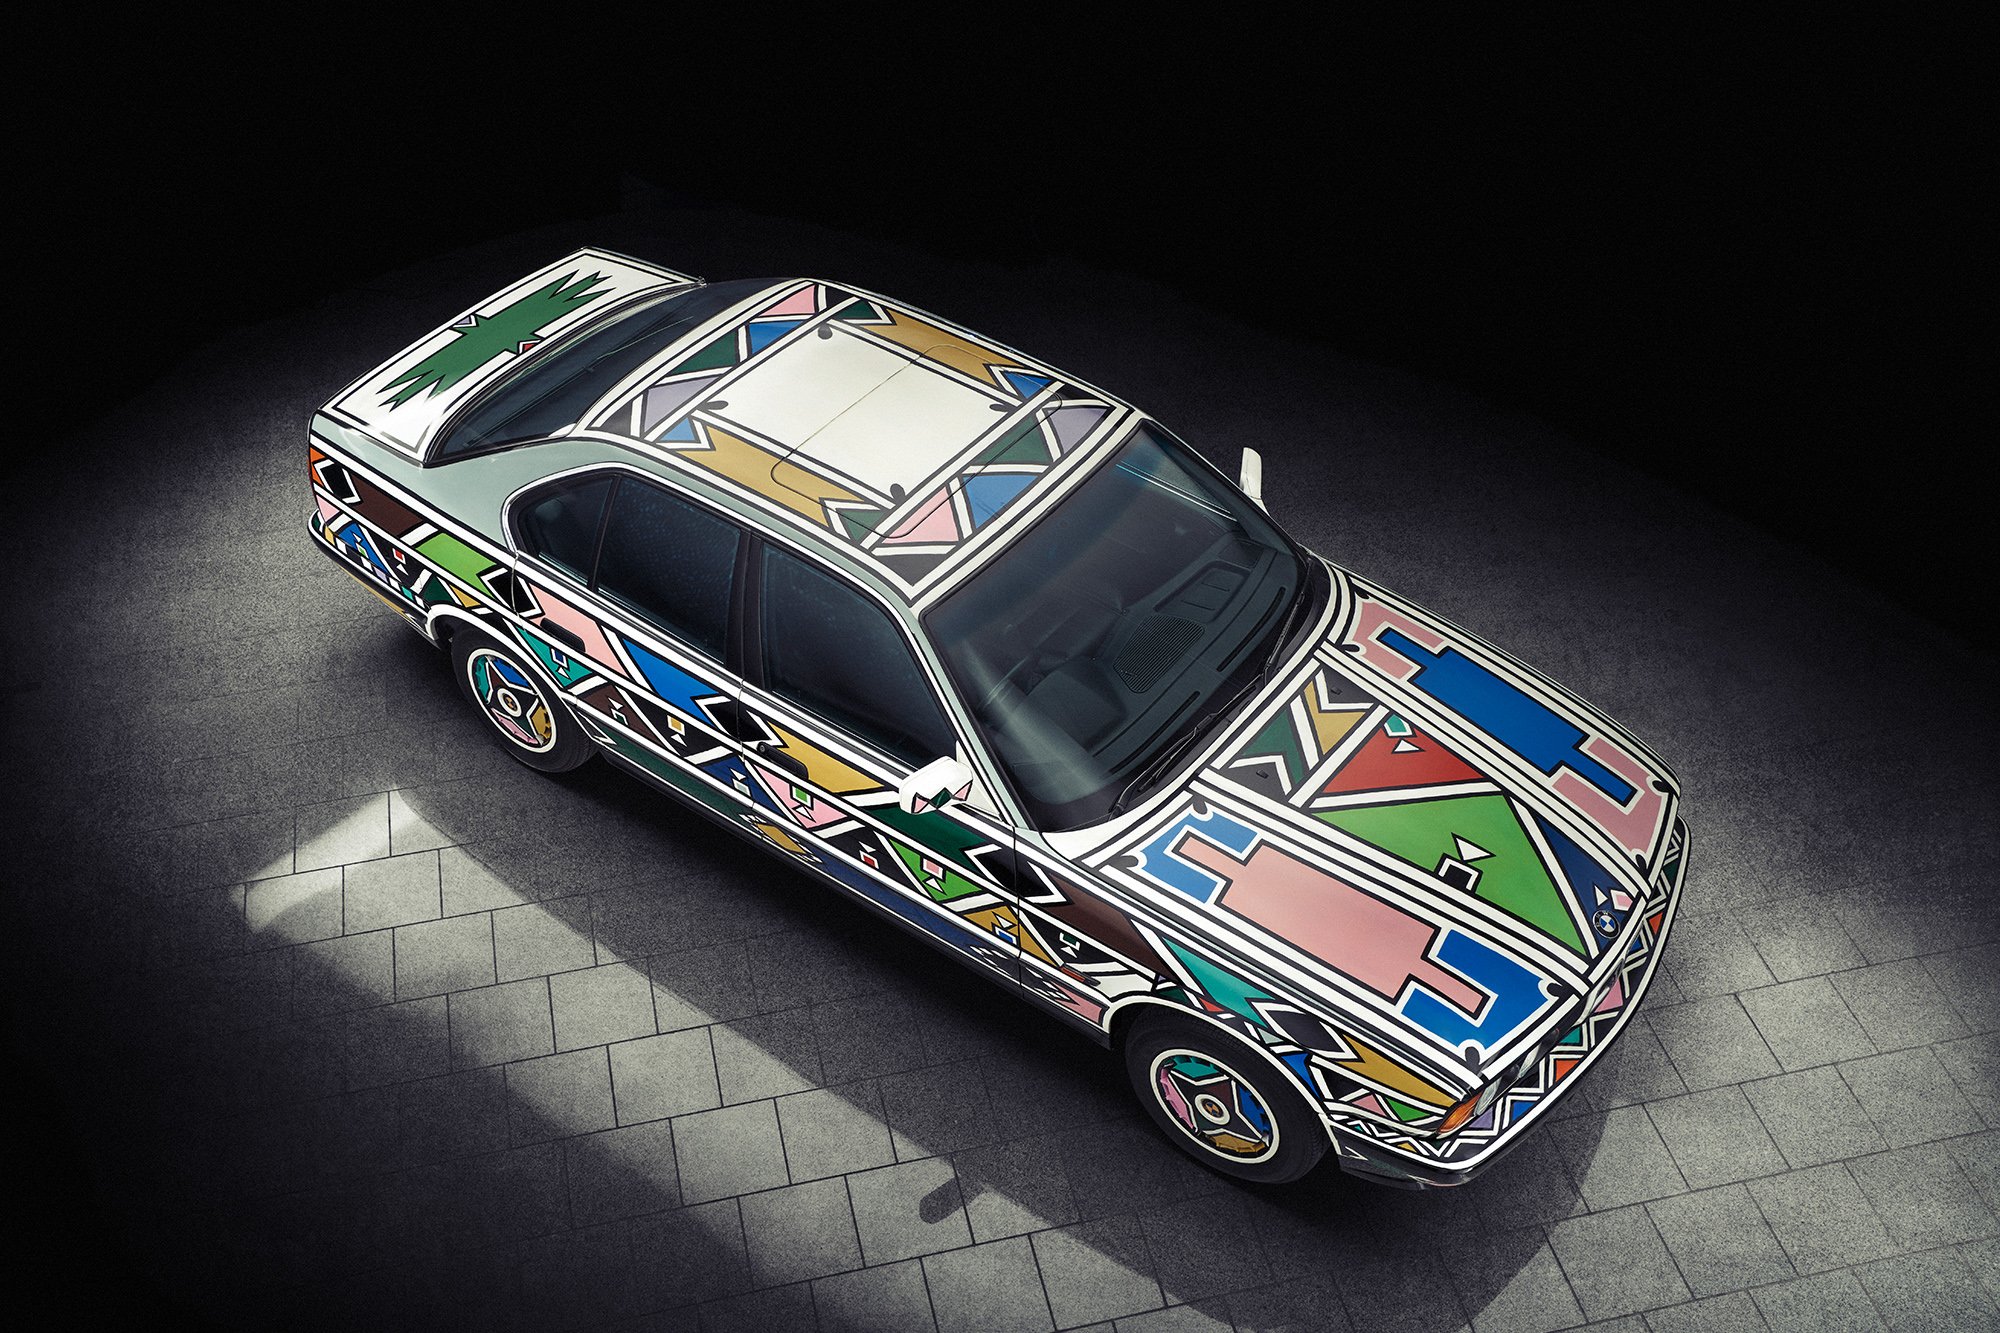 Esther Mahlangu’s BMW 525i Art Car from 1991